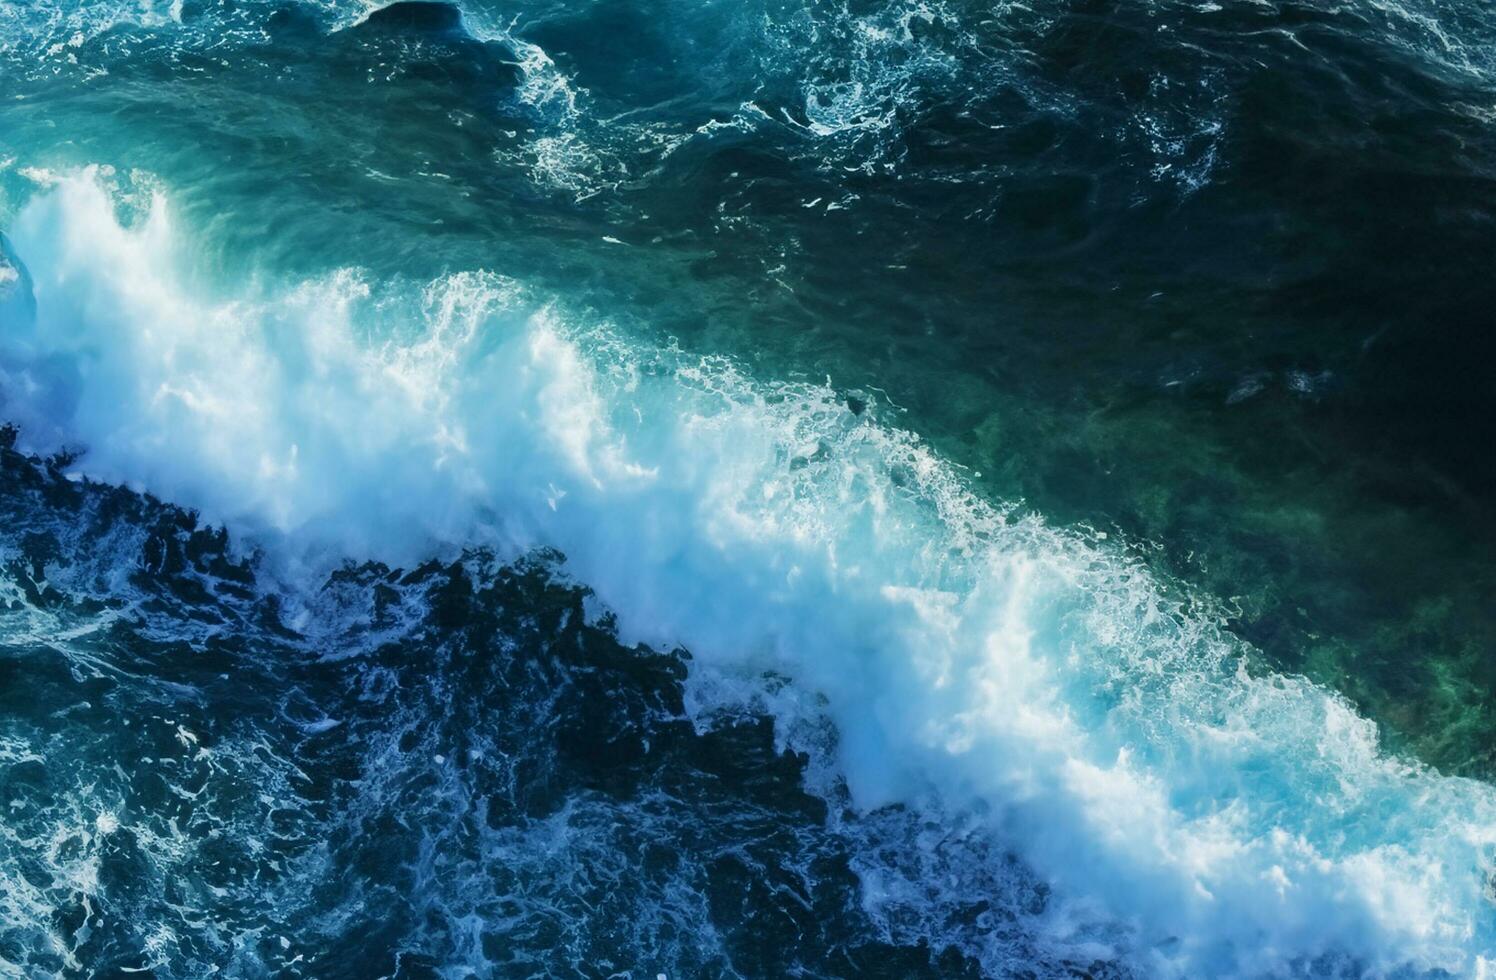 sfondo della superficie dell'acqua blu foto